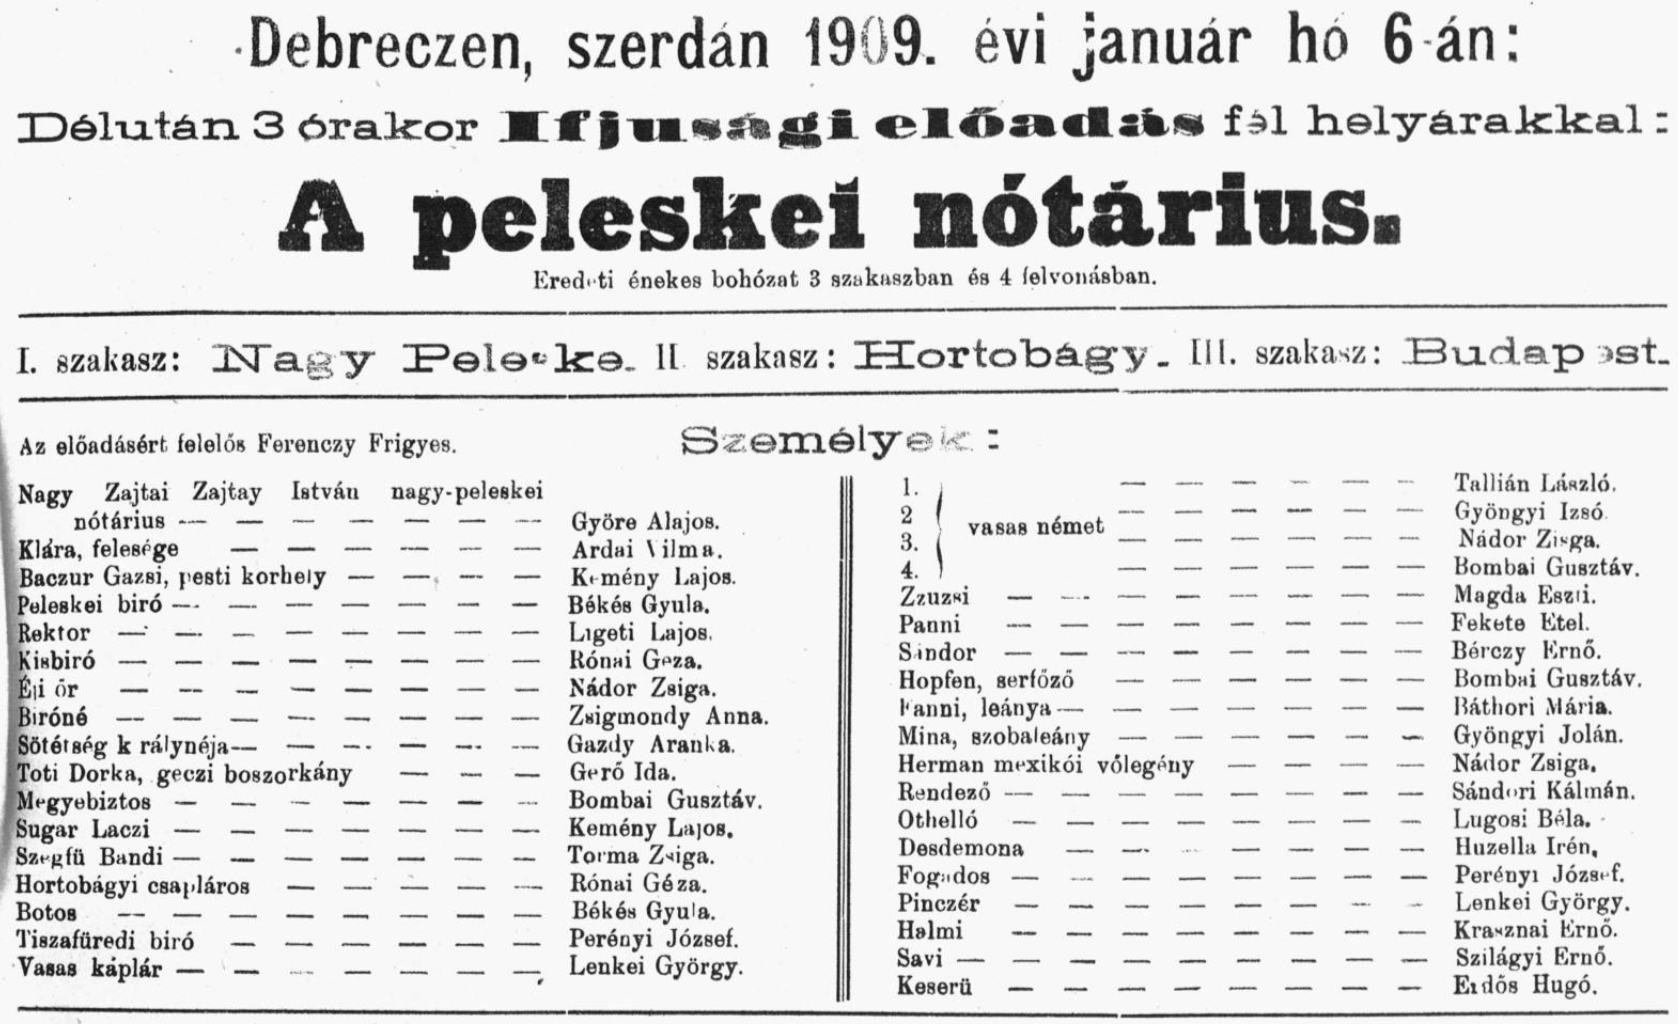 1909.01.6 - a peleskei notarius - bibPLA00006168.png